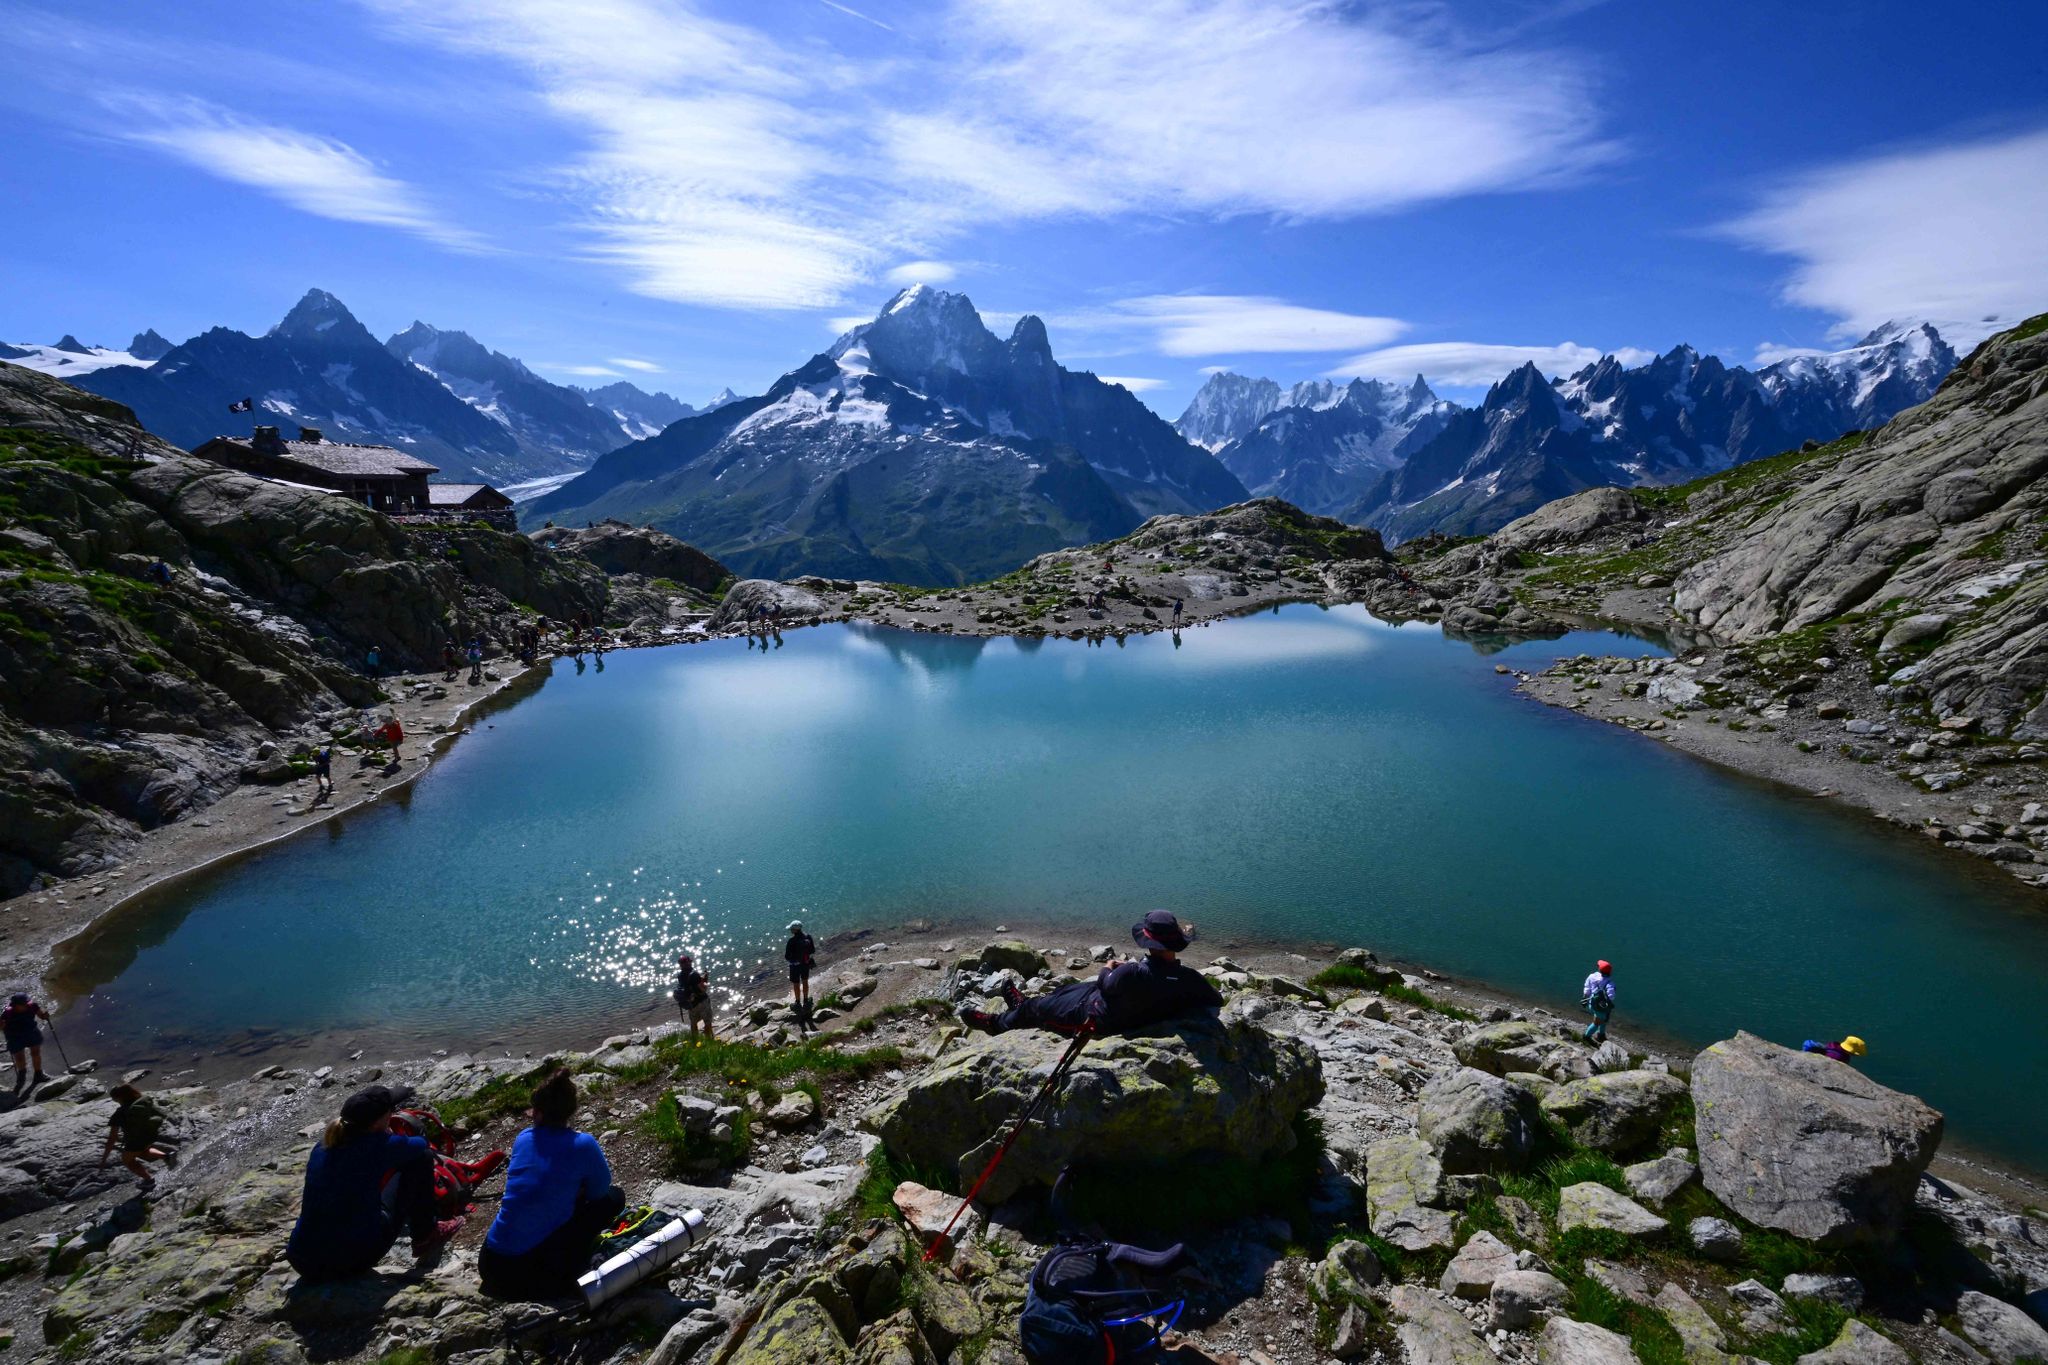 Meterologen haben in diesem Jahr den wärmsten September in den Alpen seit Beginn der Aufzeichnungen registriert.